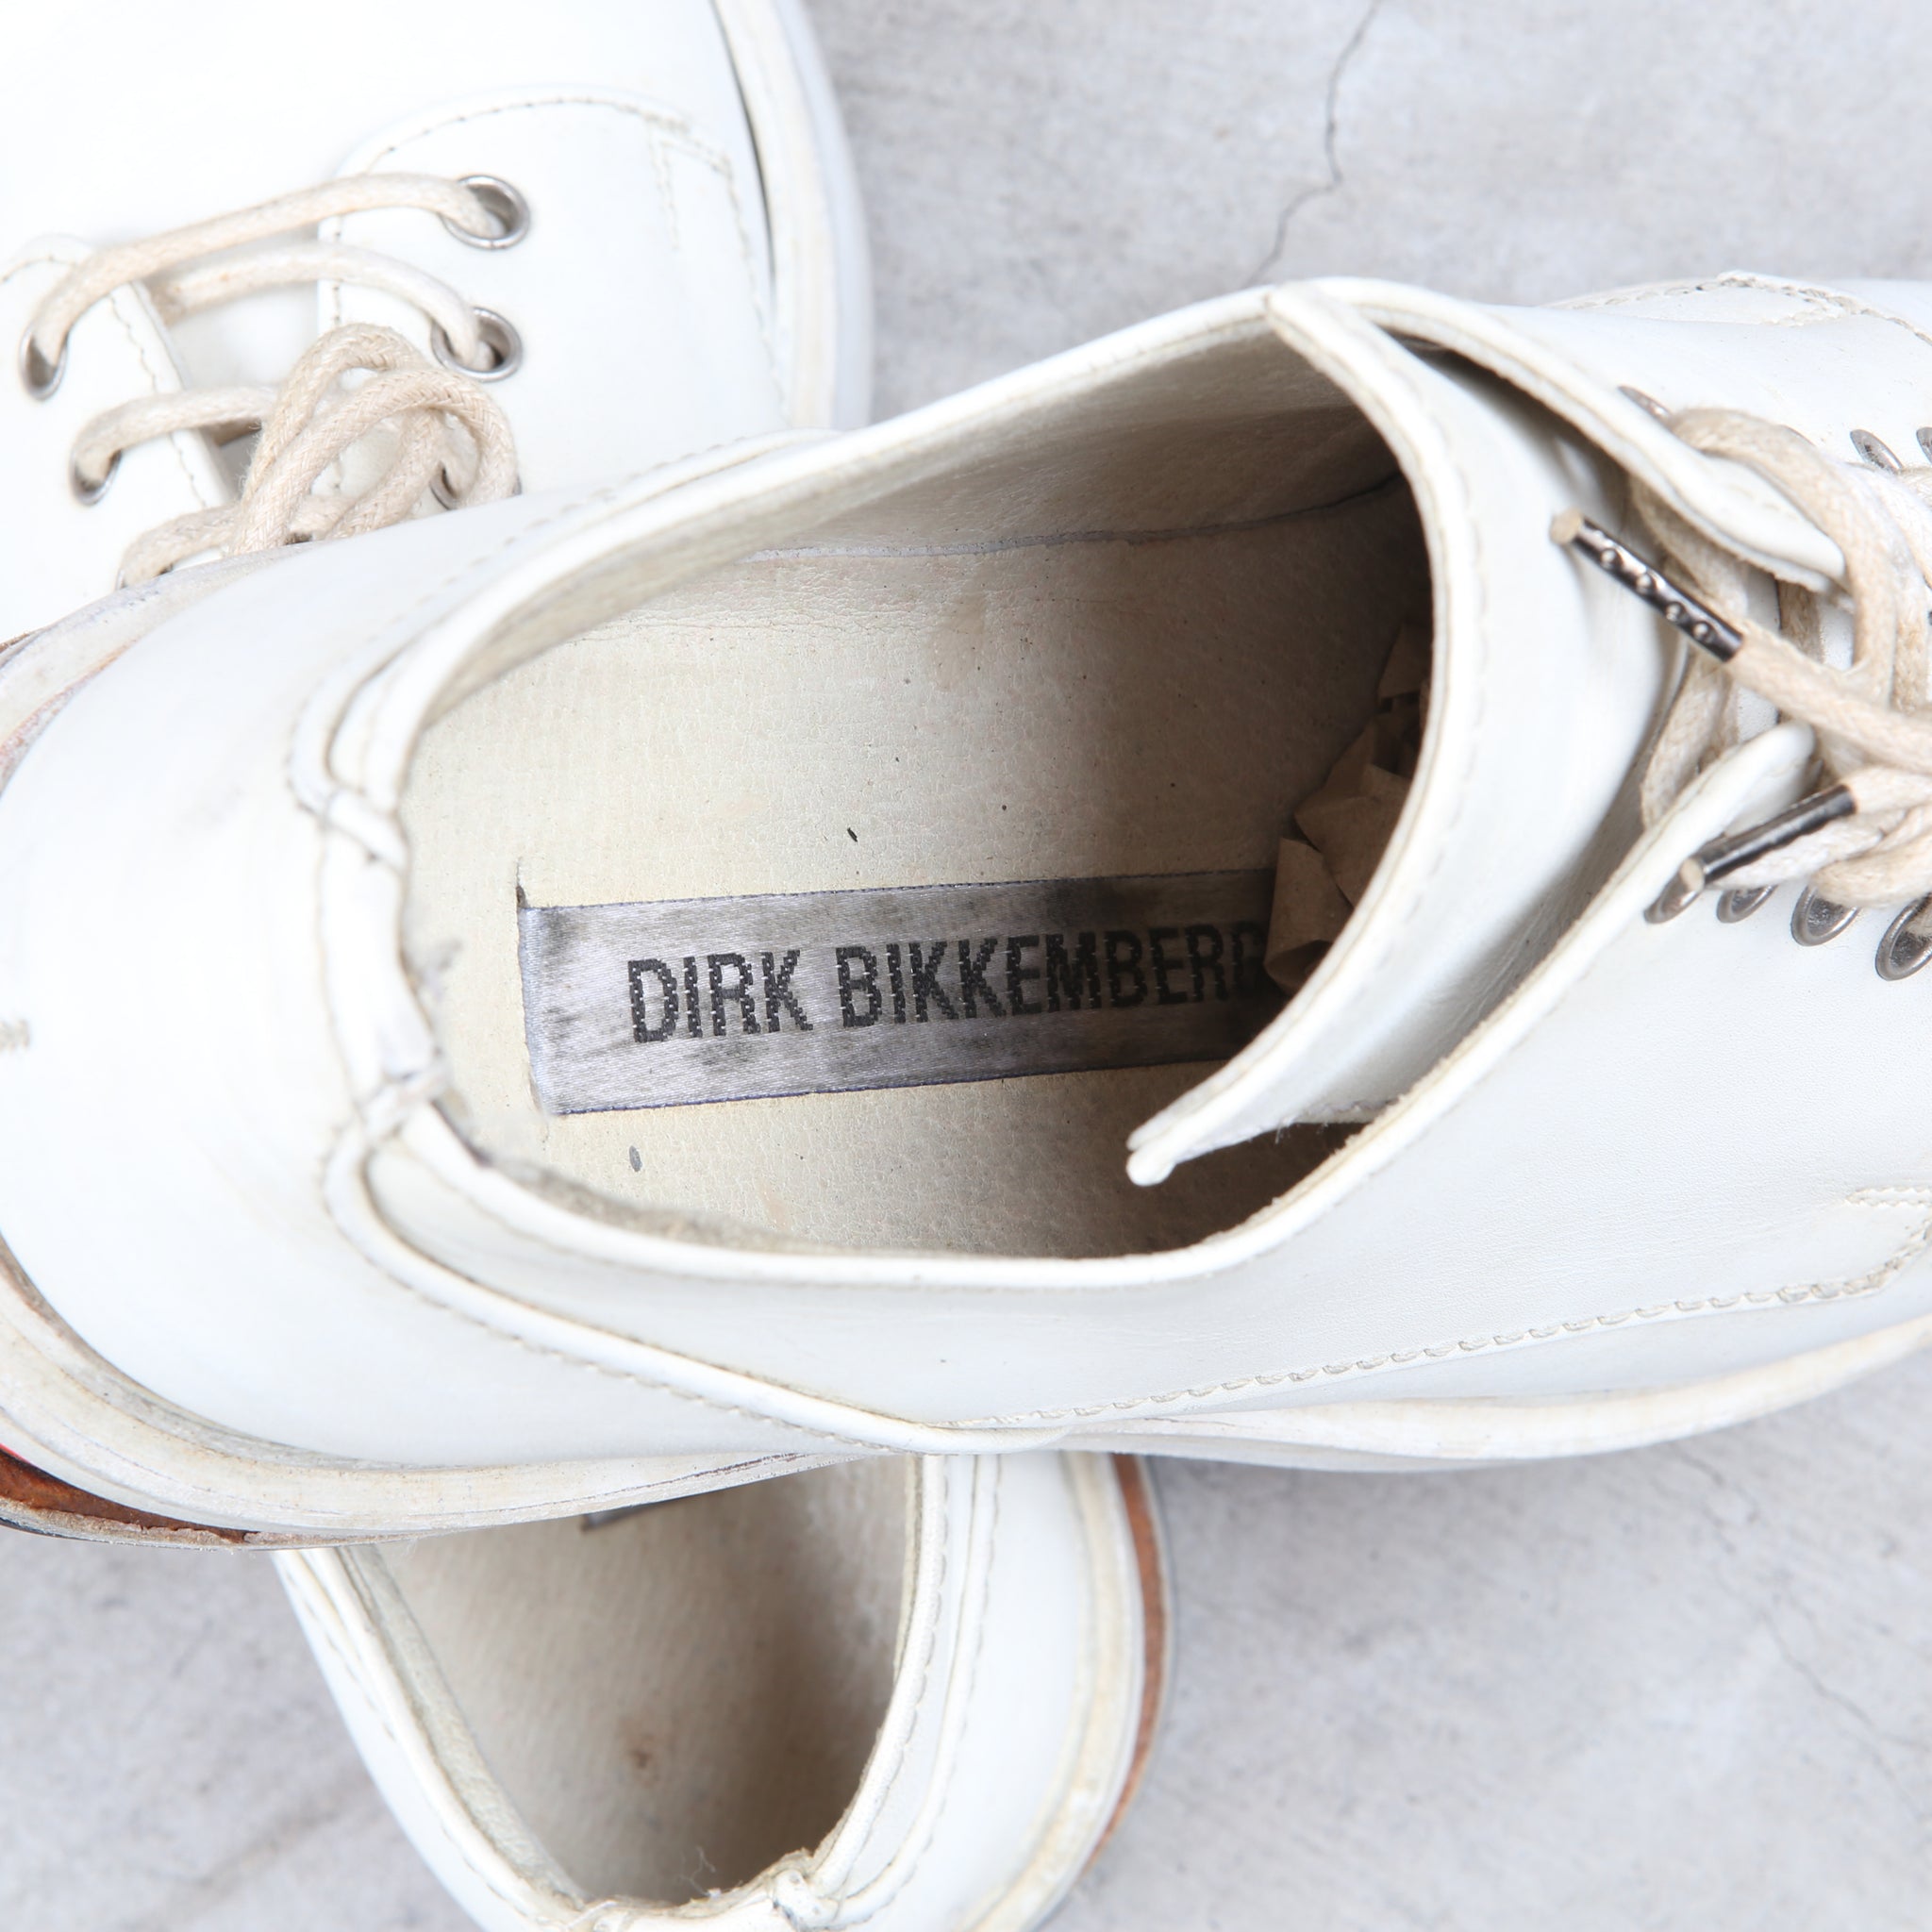 Dirk Bikkembergs White Derby Boots “Easy Rider” Orange Heel